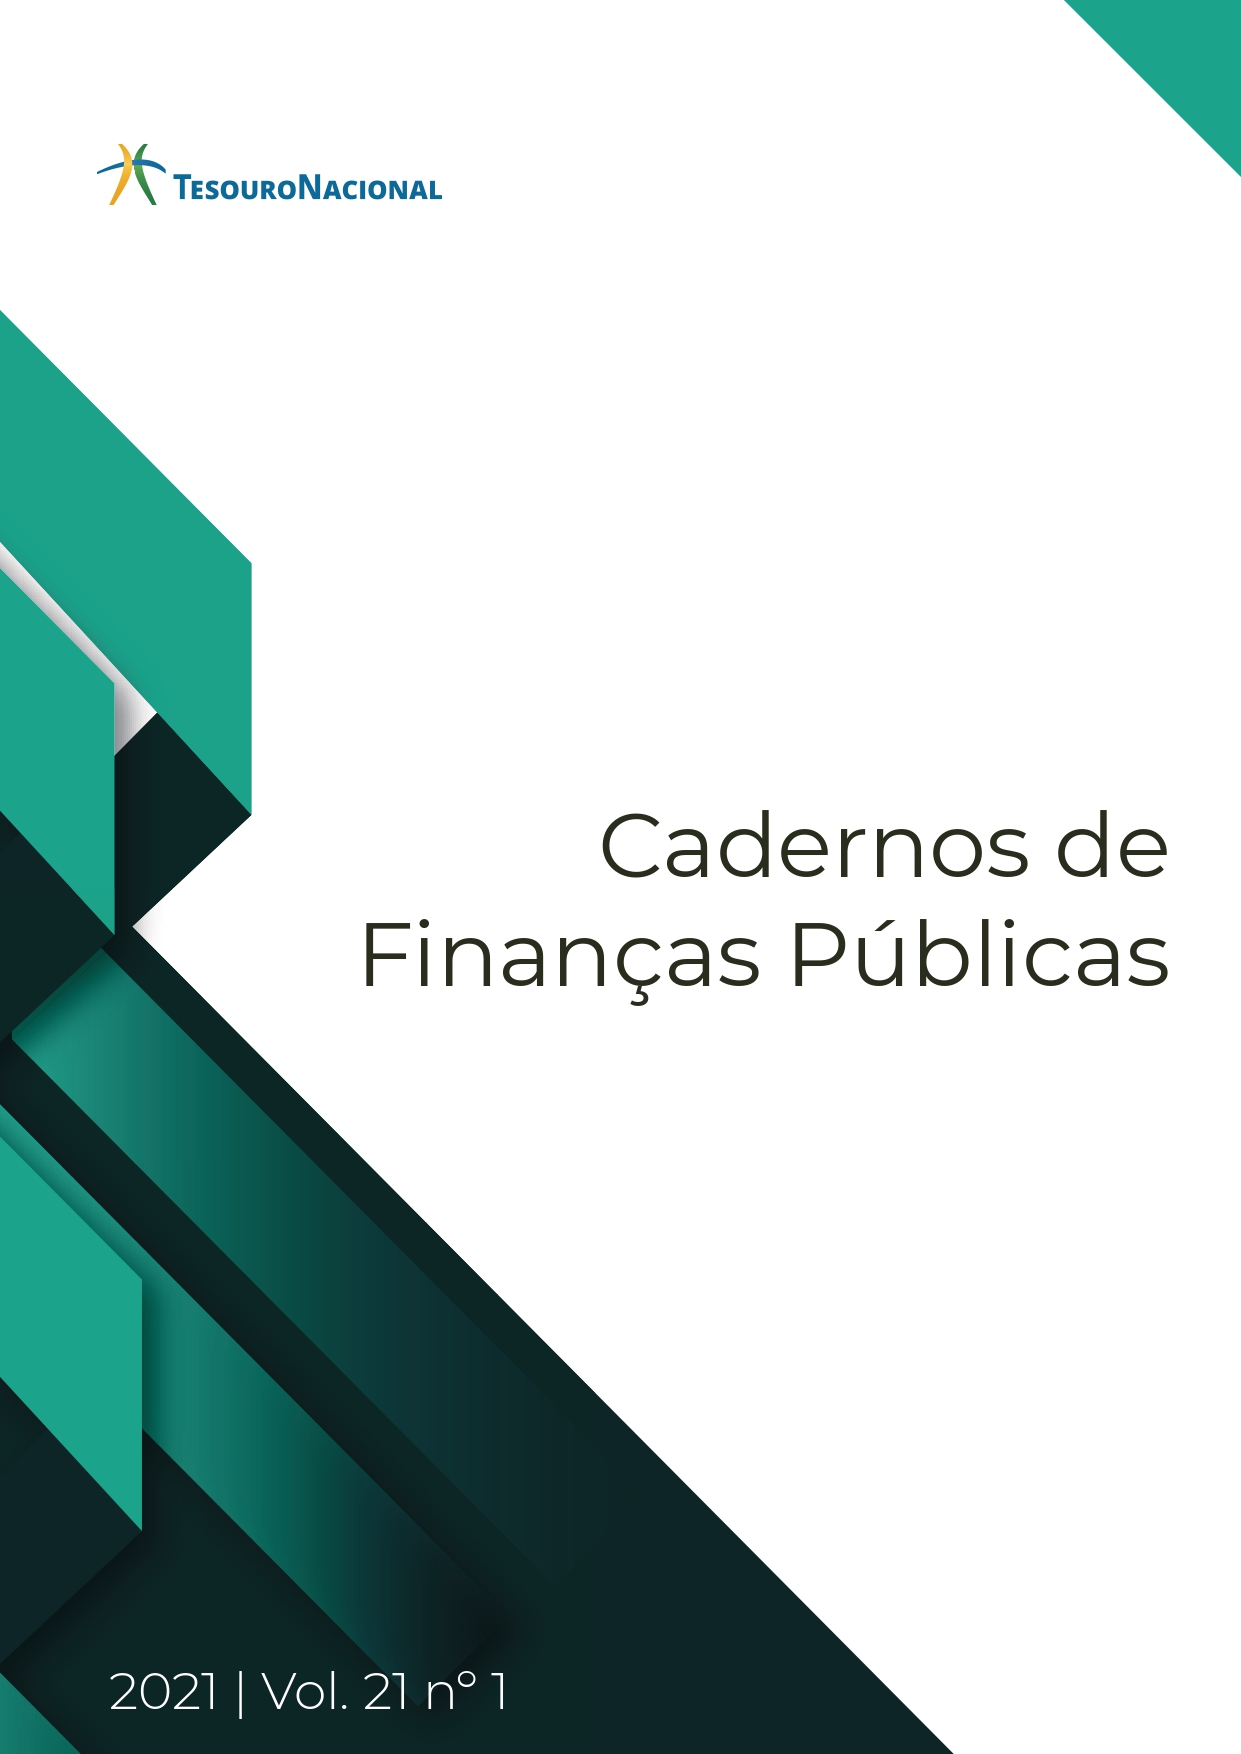 					Visualizar v. 21 n. 01 (2021): CADERNOS DE FINANÇAS PÚBLICAS
				